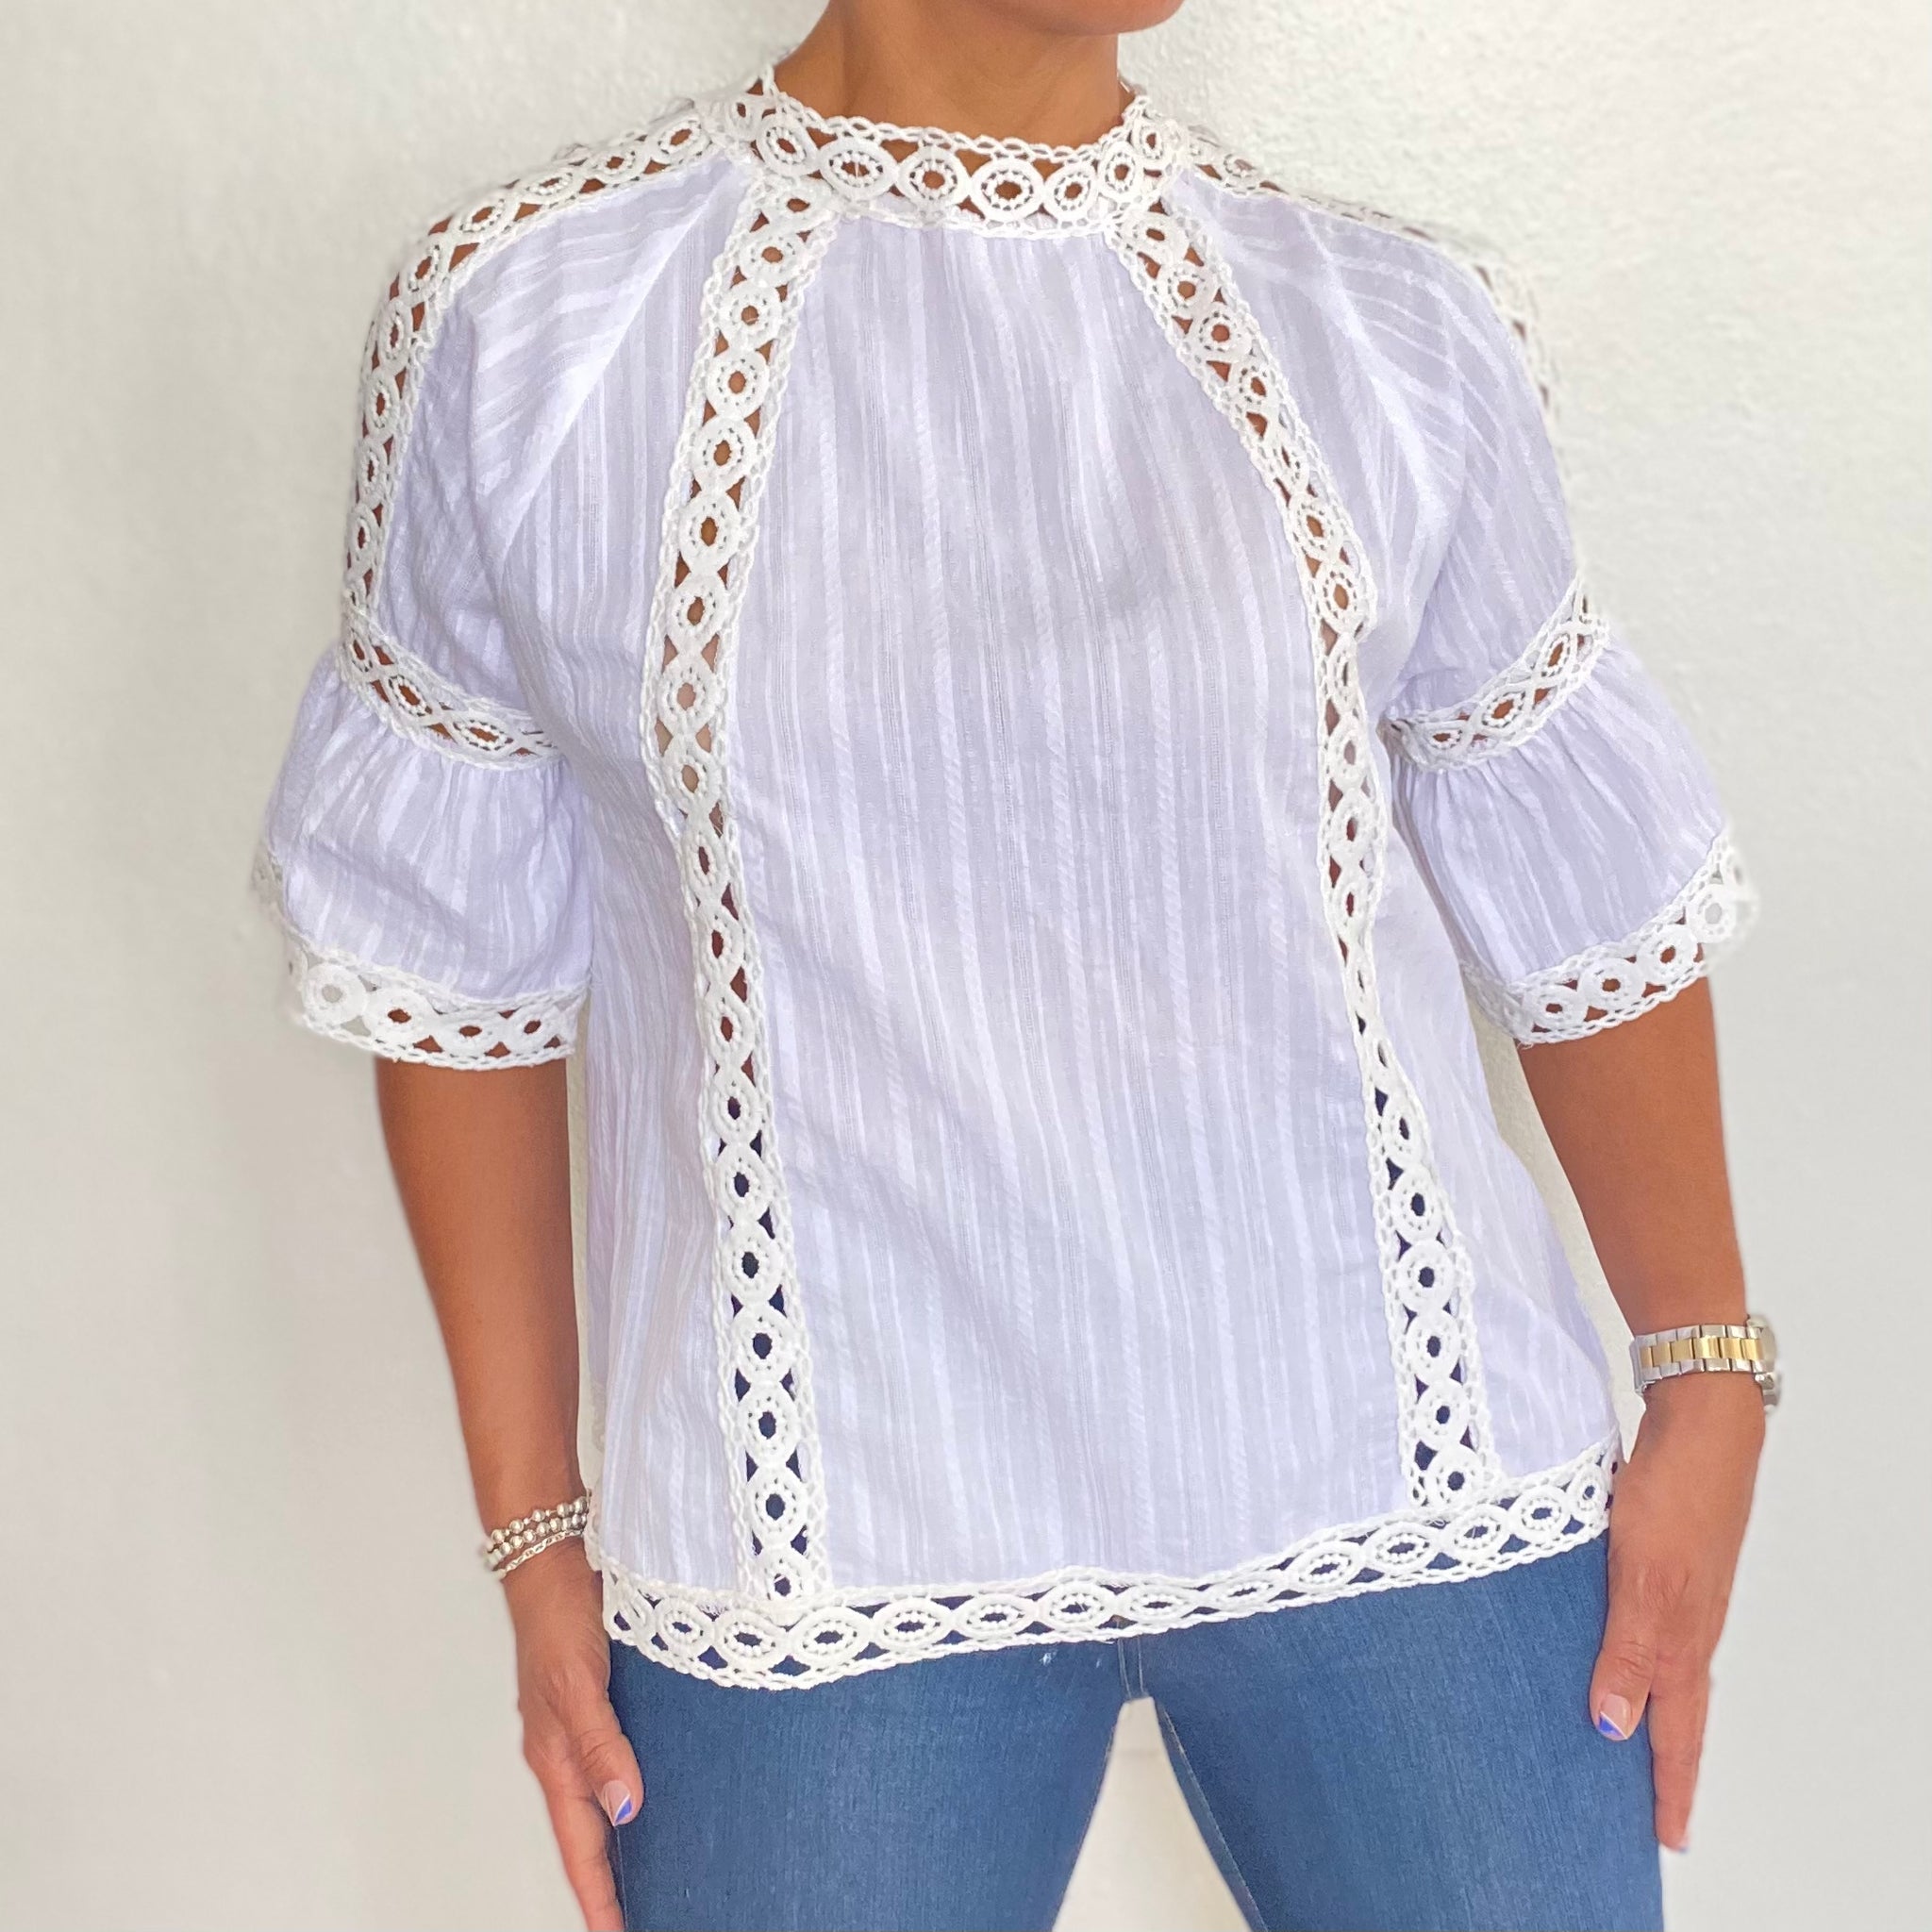 Lace trim detail shoulder cutout blouse top